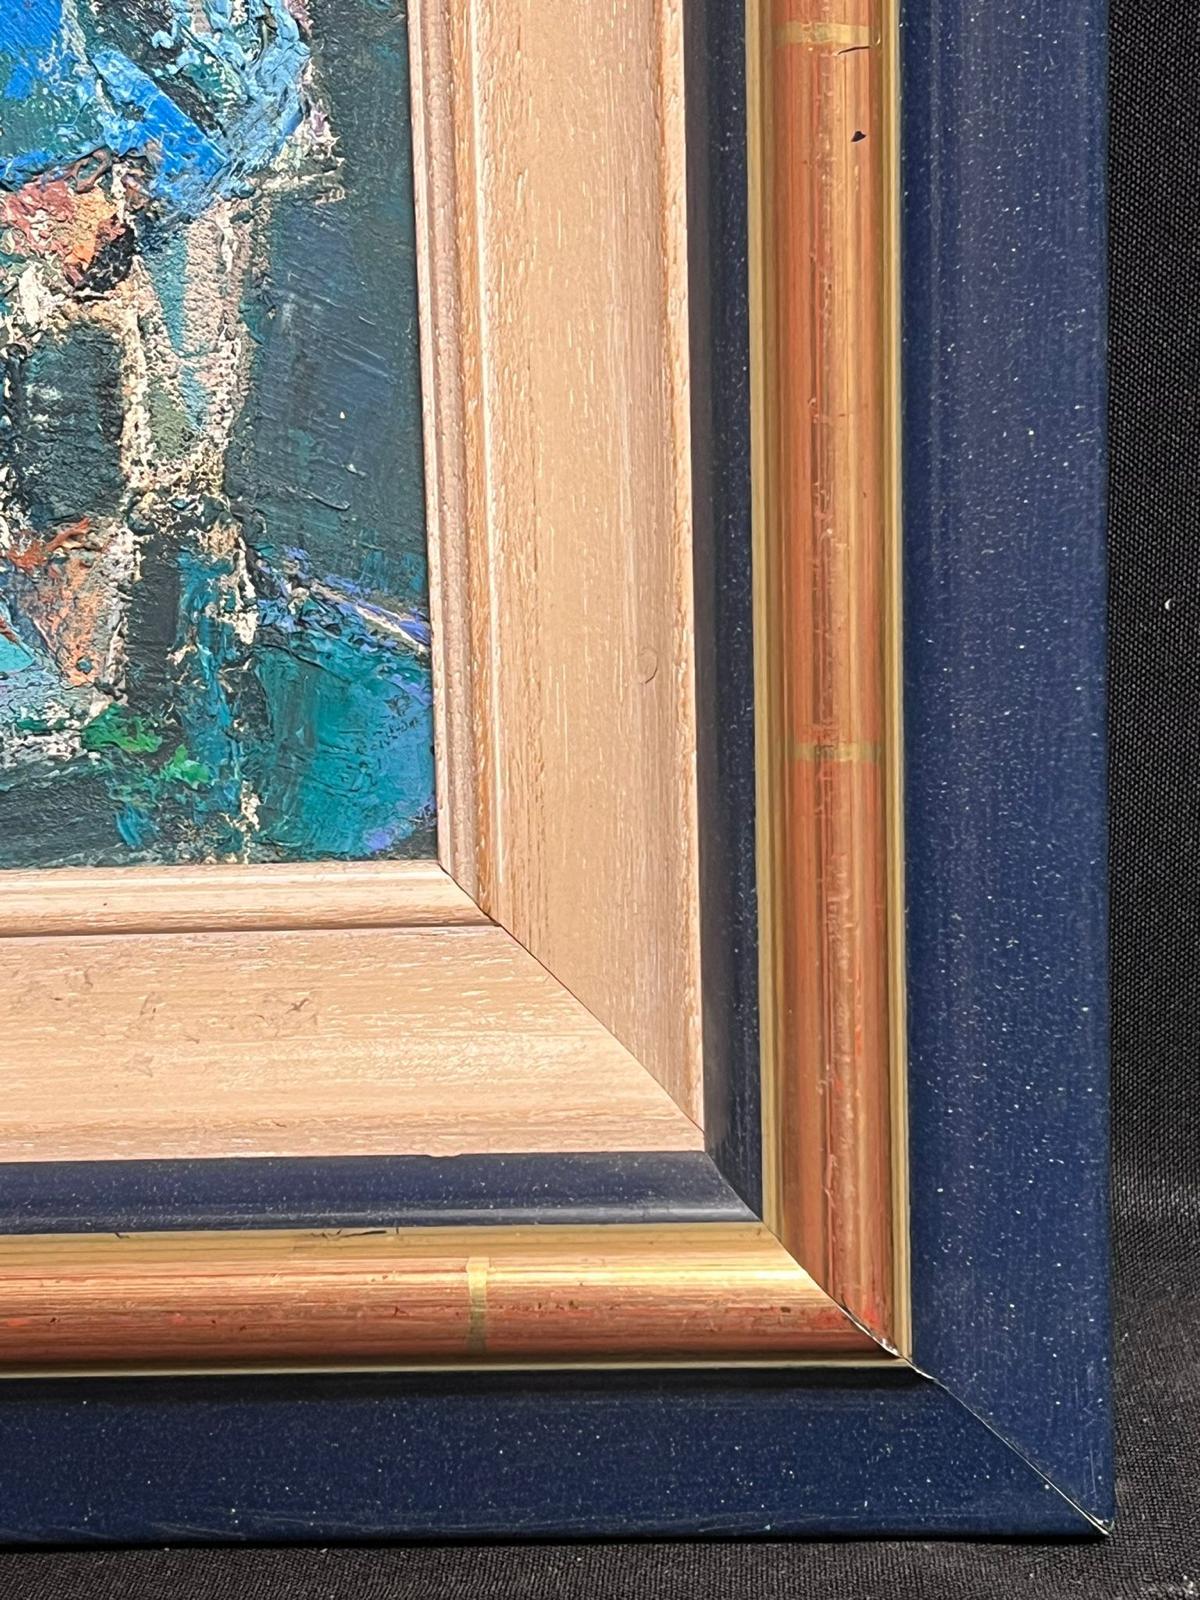 Pêcheurs en blouse bleue
Artistique post-impressionniste français, signé
20ème siècle
huile sur carton, encadrée
encadré : 14.5 x 15 pouces
planche : 11,5 x 11,5 pouces
provenance : collection privée, France
état : très bon et sain